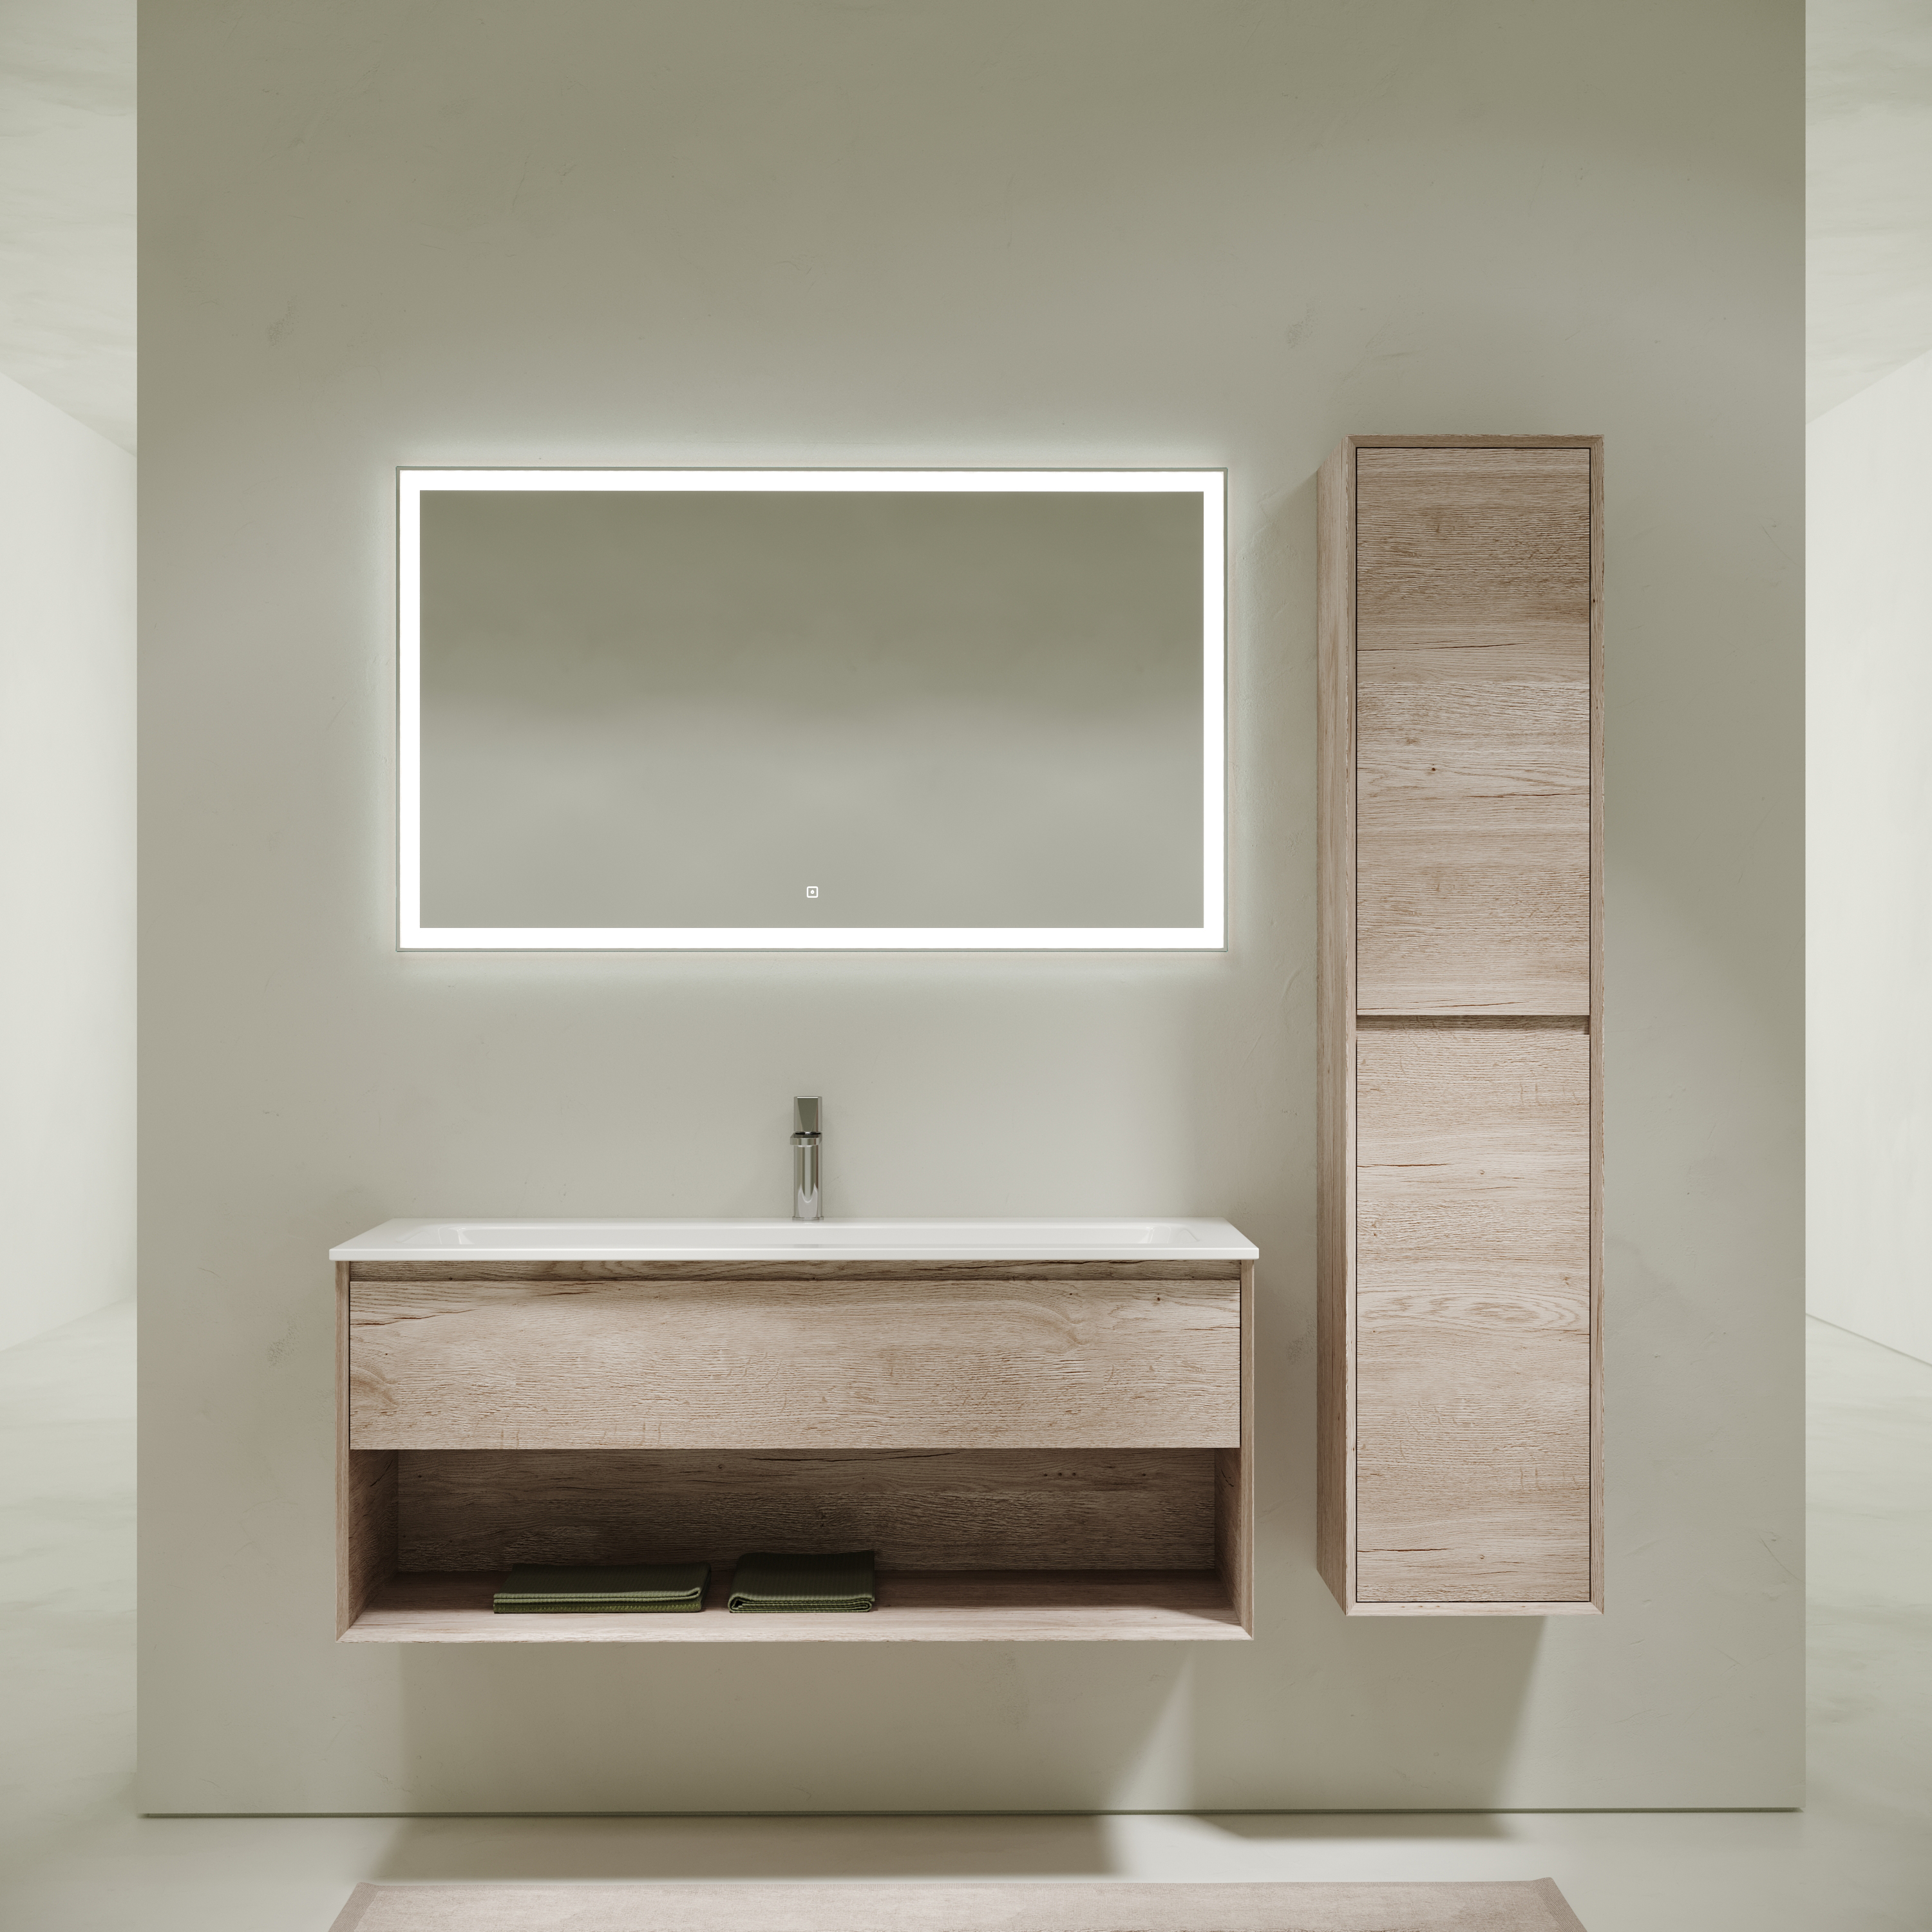 Мебель для ванной комнаты Sancos Marmi 1.0 120 см дуб галифакс натуральный, цвет коричневый MR1.0120EG - фото 1